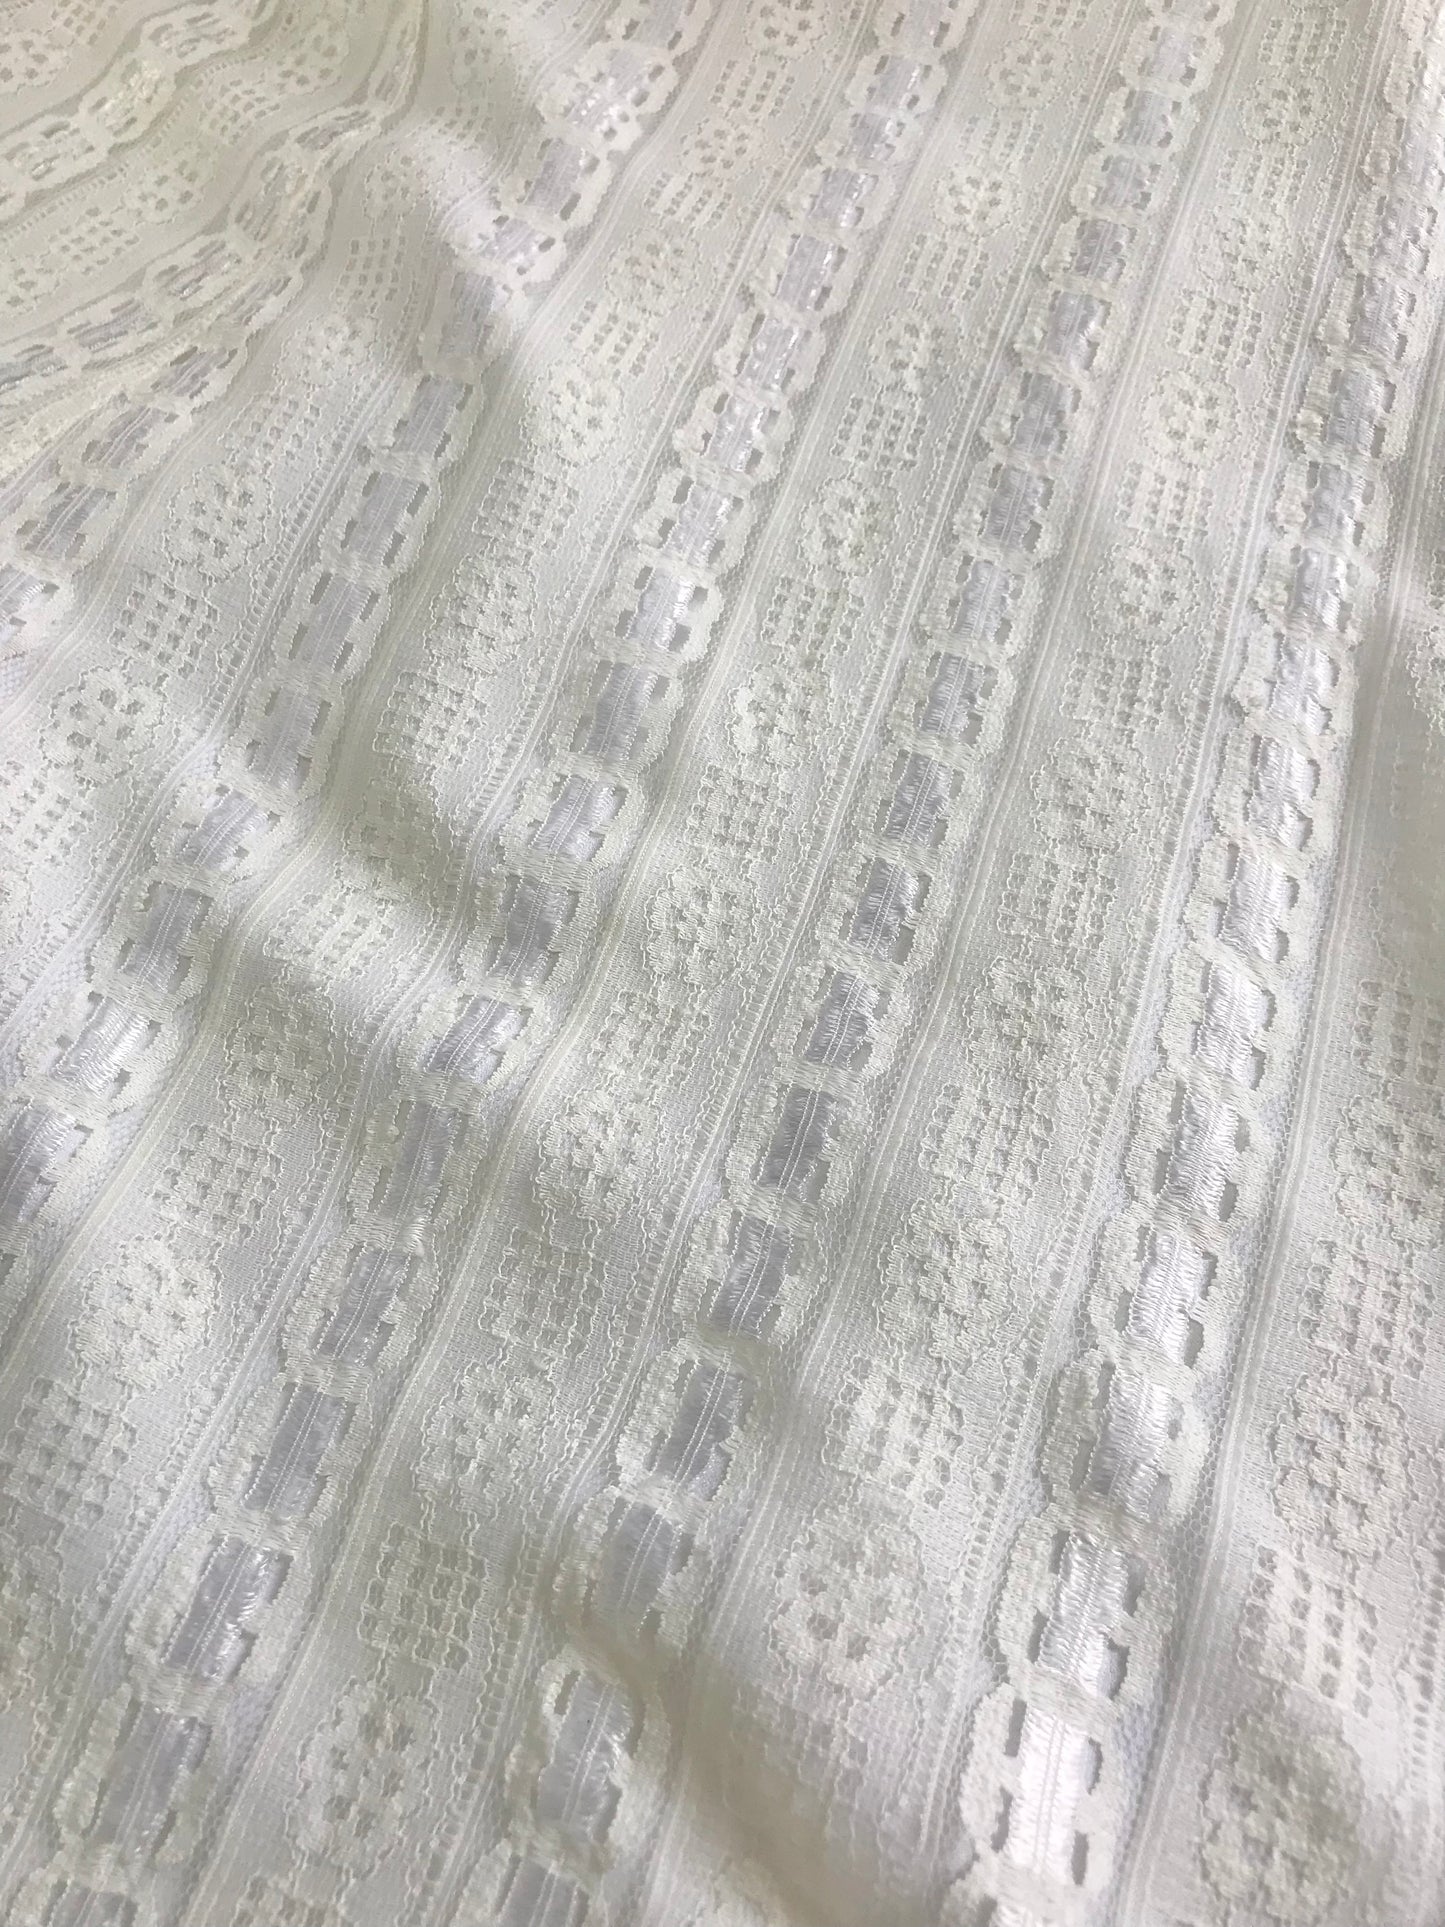 ’70s Vintage White Lace Dress [E24022]